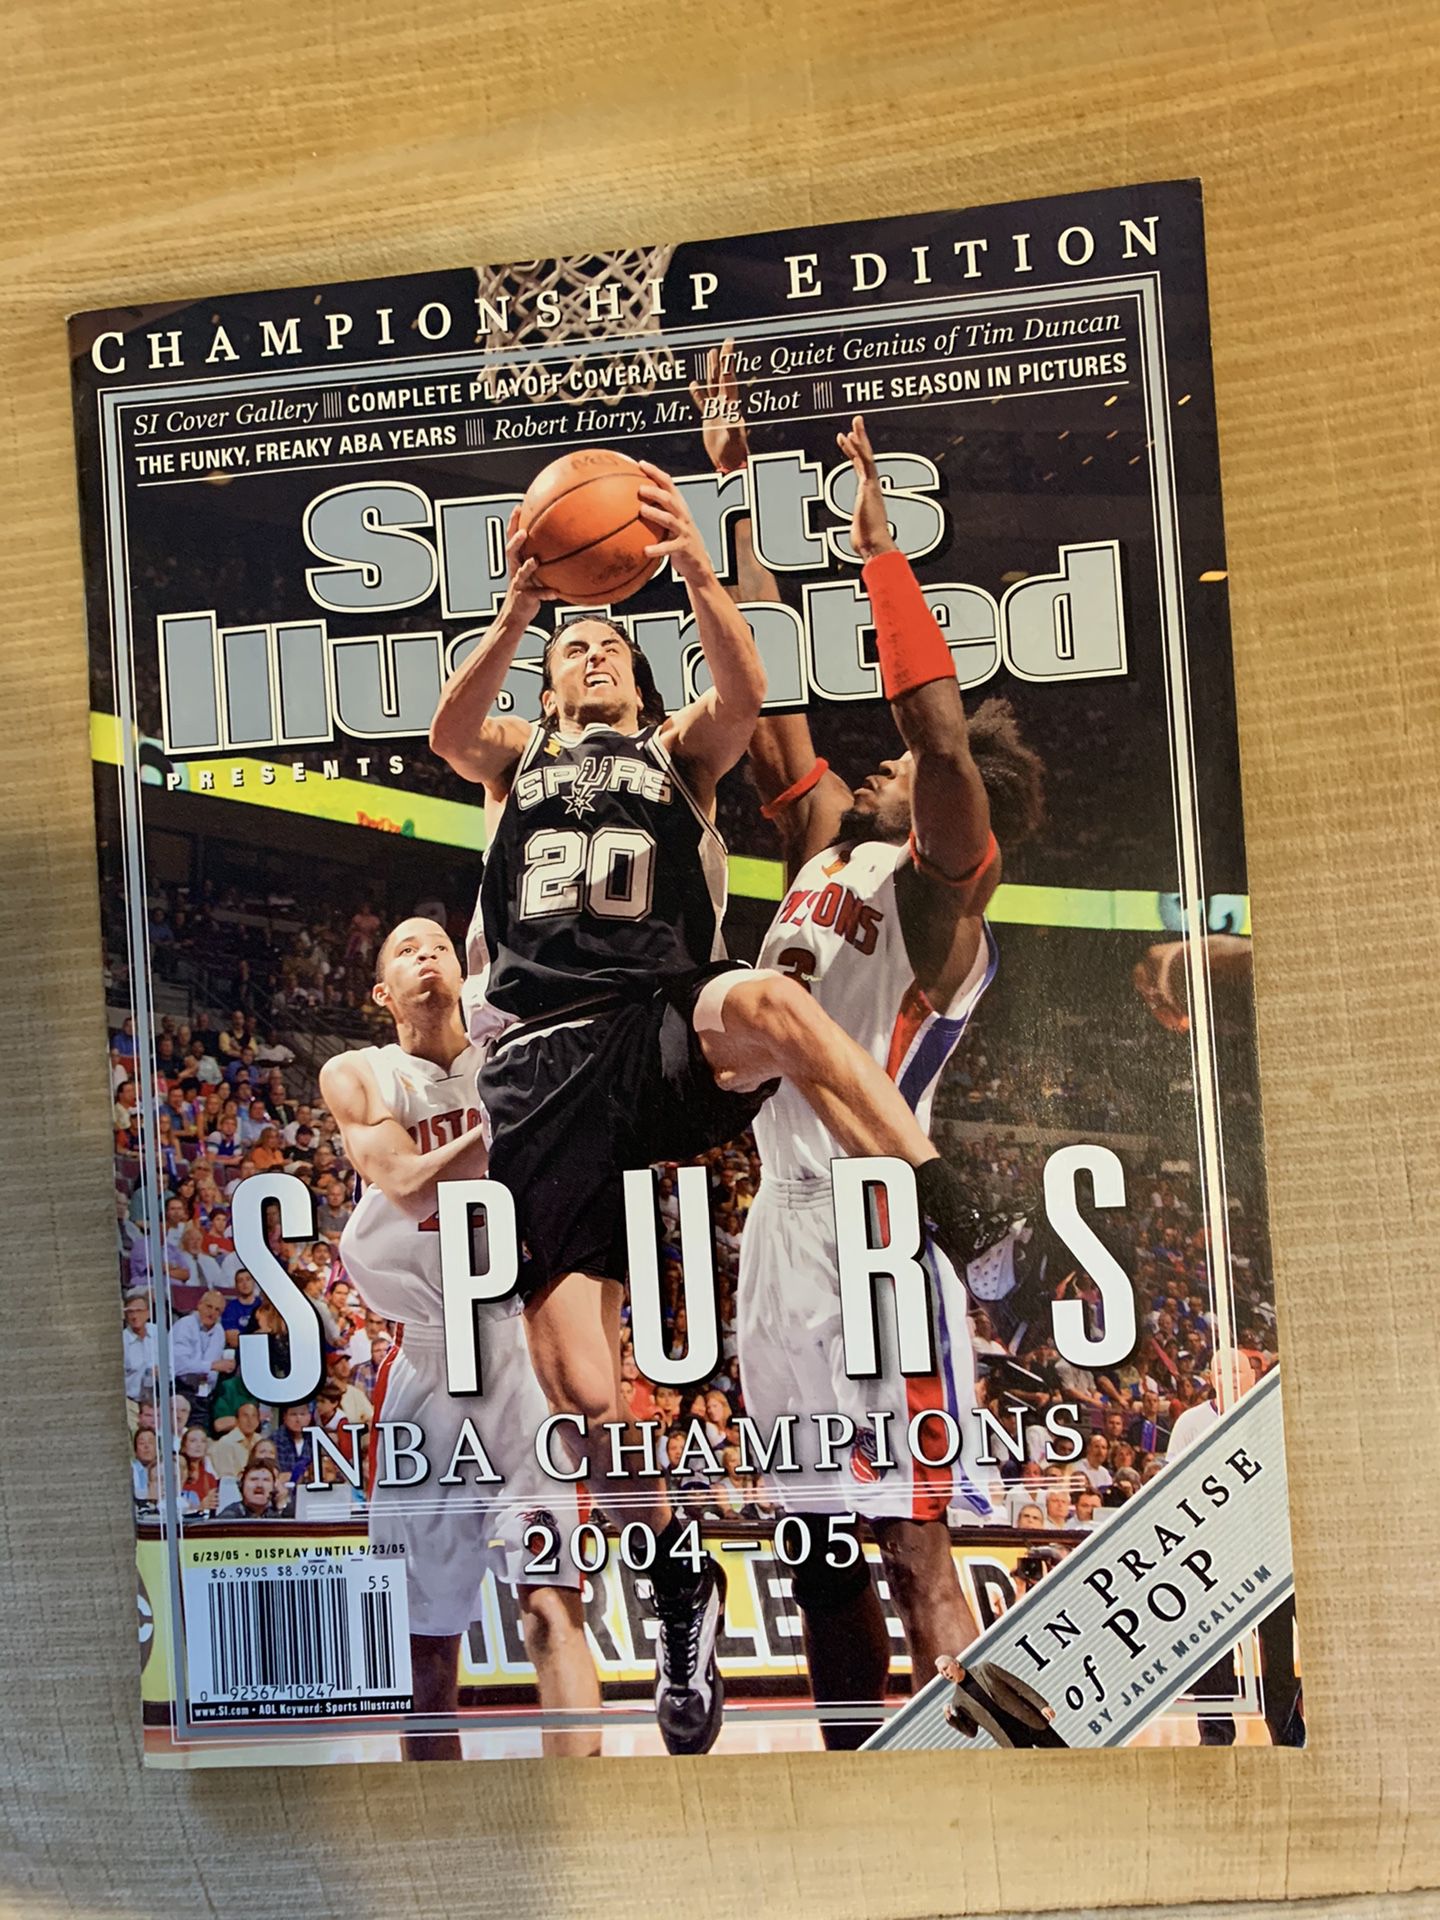 San Antonio Spurs 2003 NBA Champions Poster San Antonio 